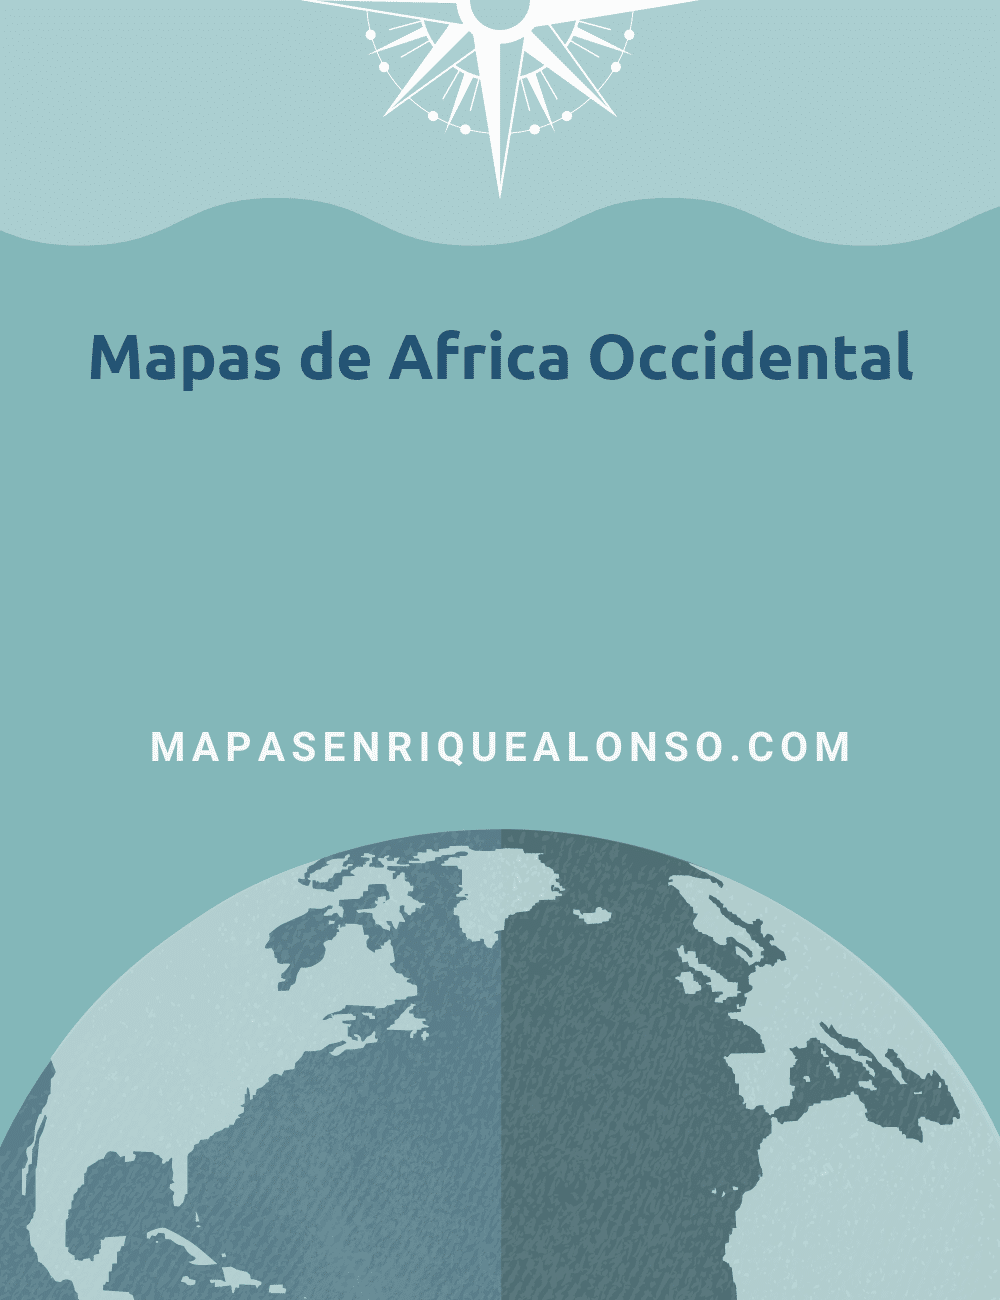 Mapas de Africa Occidental